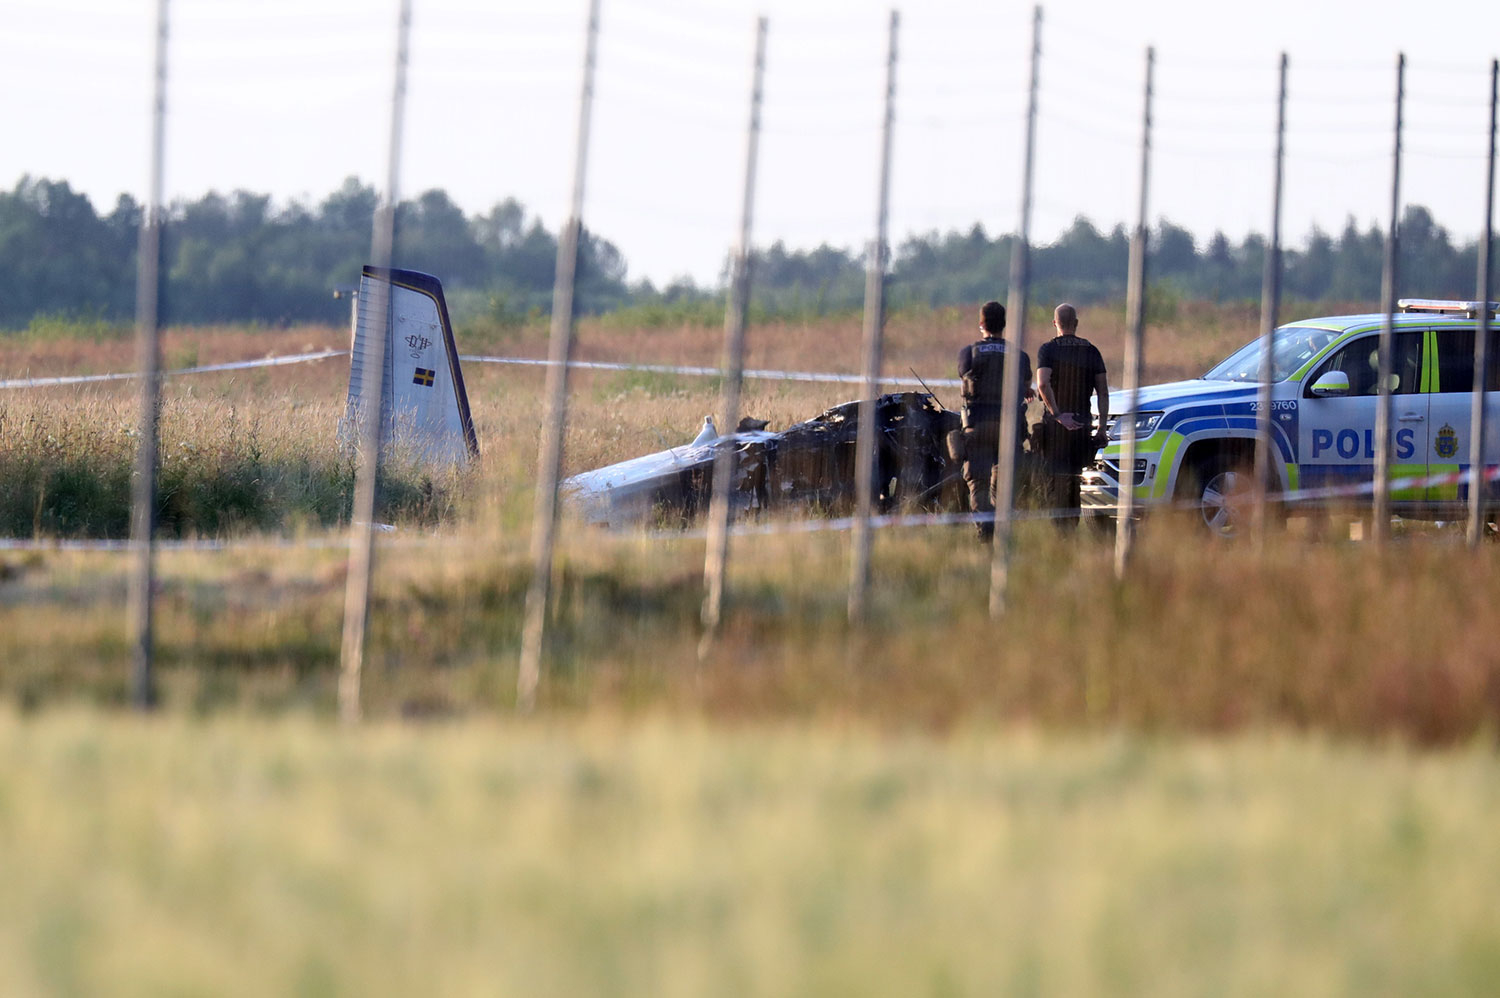 Et fly med åtte fallskjermhoppere og én flyger om bord styrtet da det skulle ta av fra flyplassen i Örebro i Sverige torsdag. Alle om bord mistet livet. 